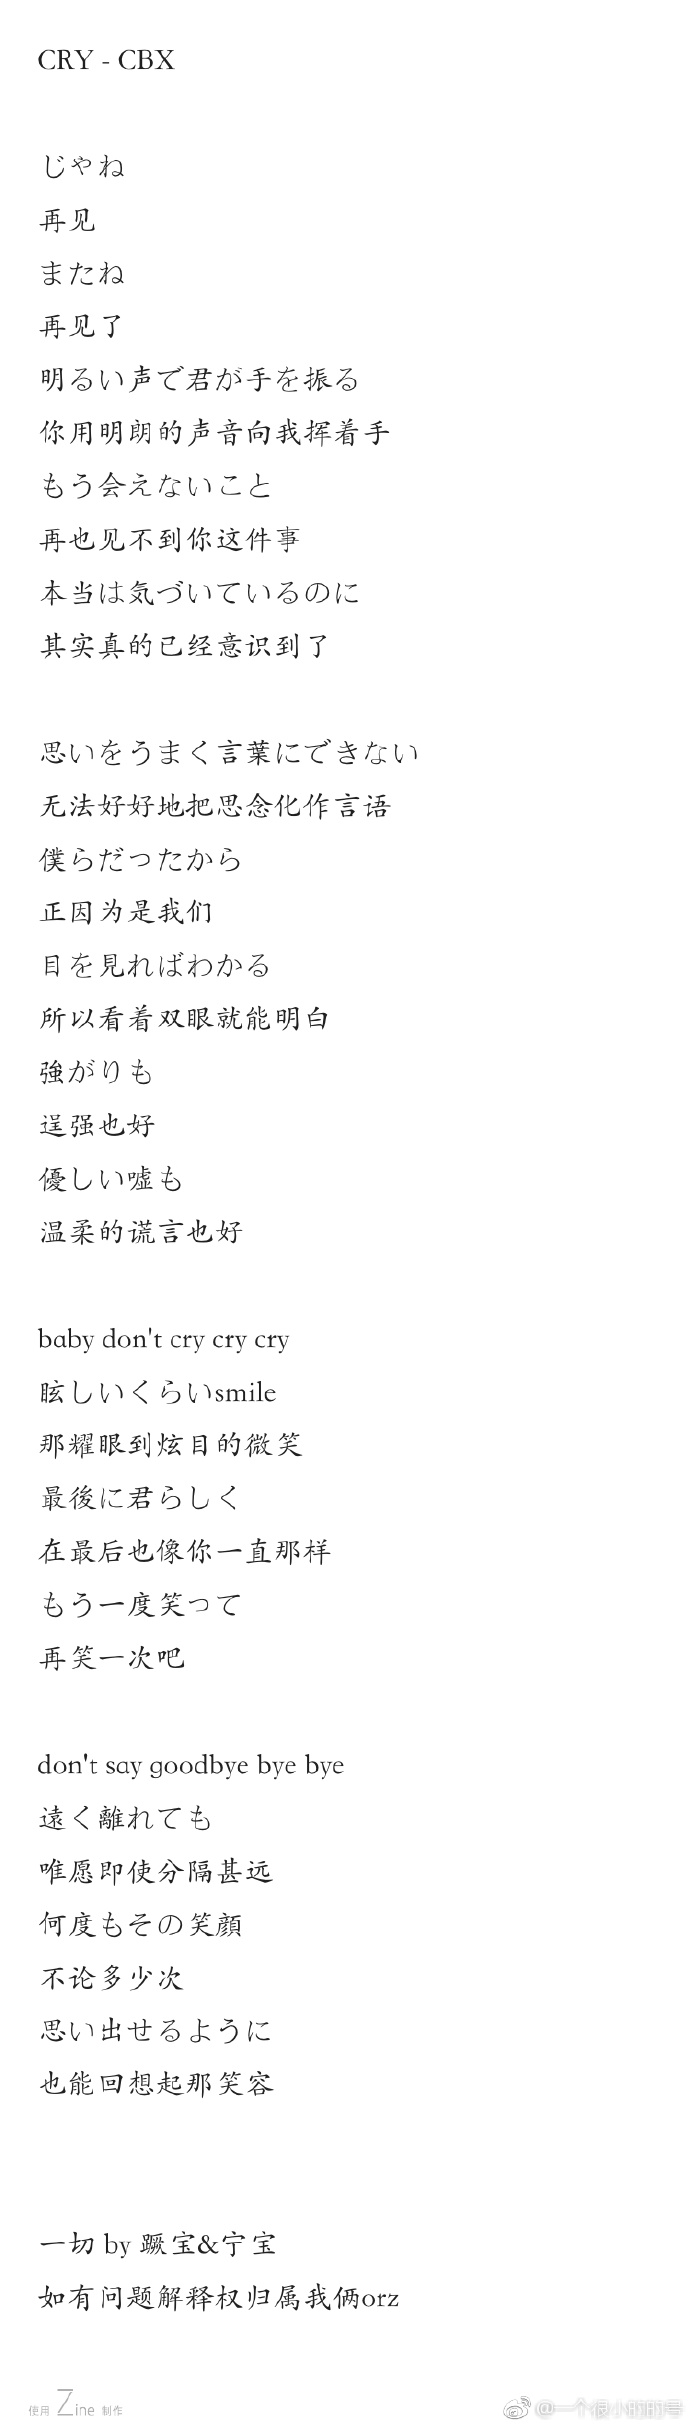 Exo 分享 经典日式悲伤之饭制cbx Cry 歌词中文版公开 爱豆app